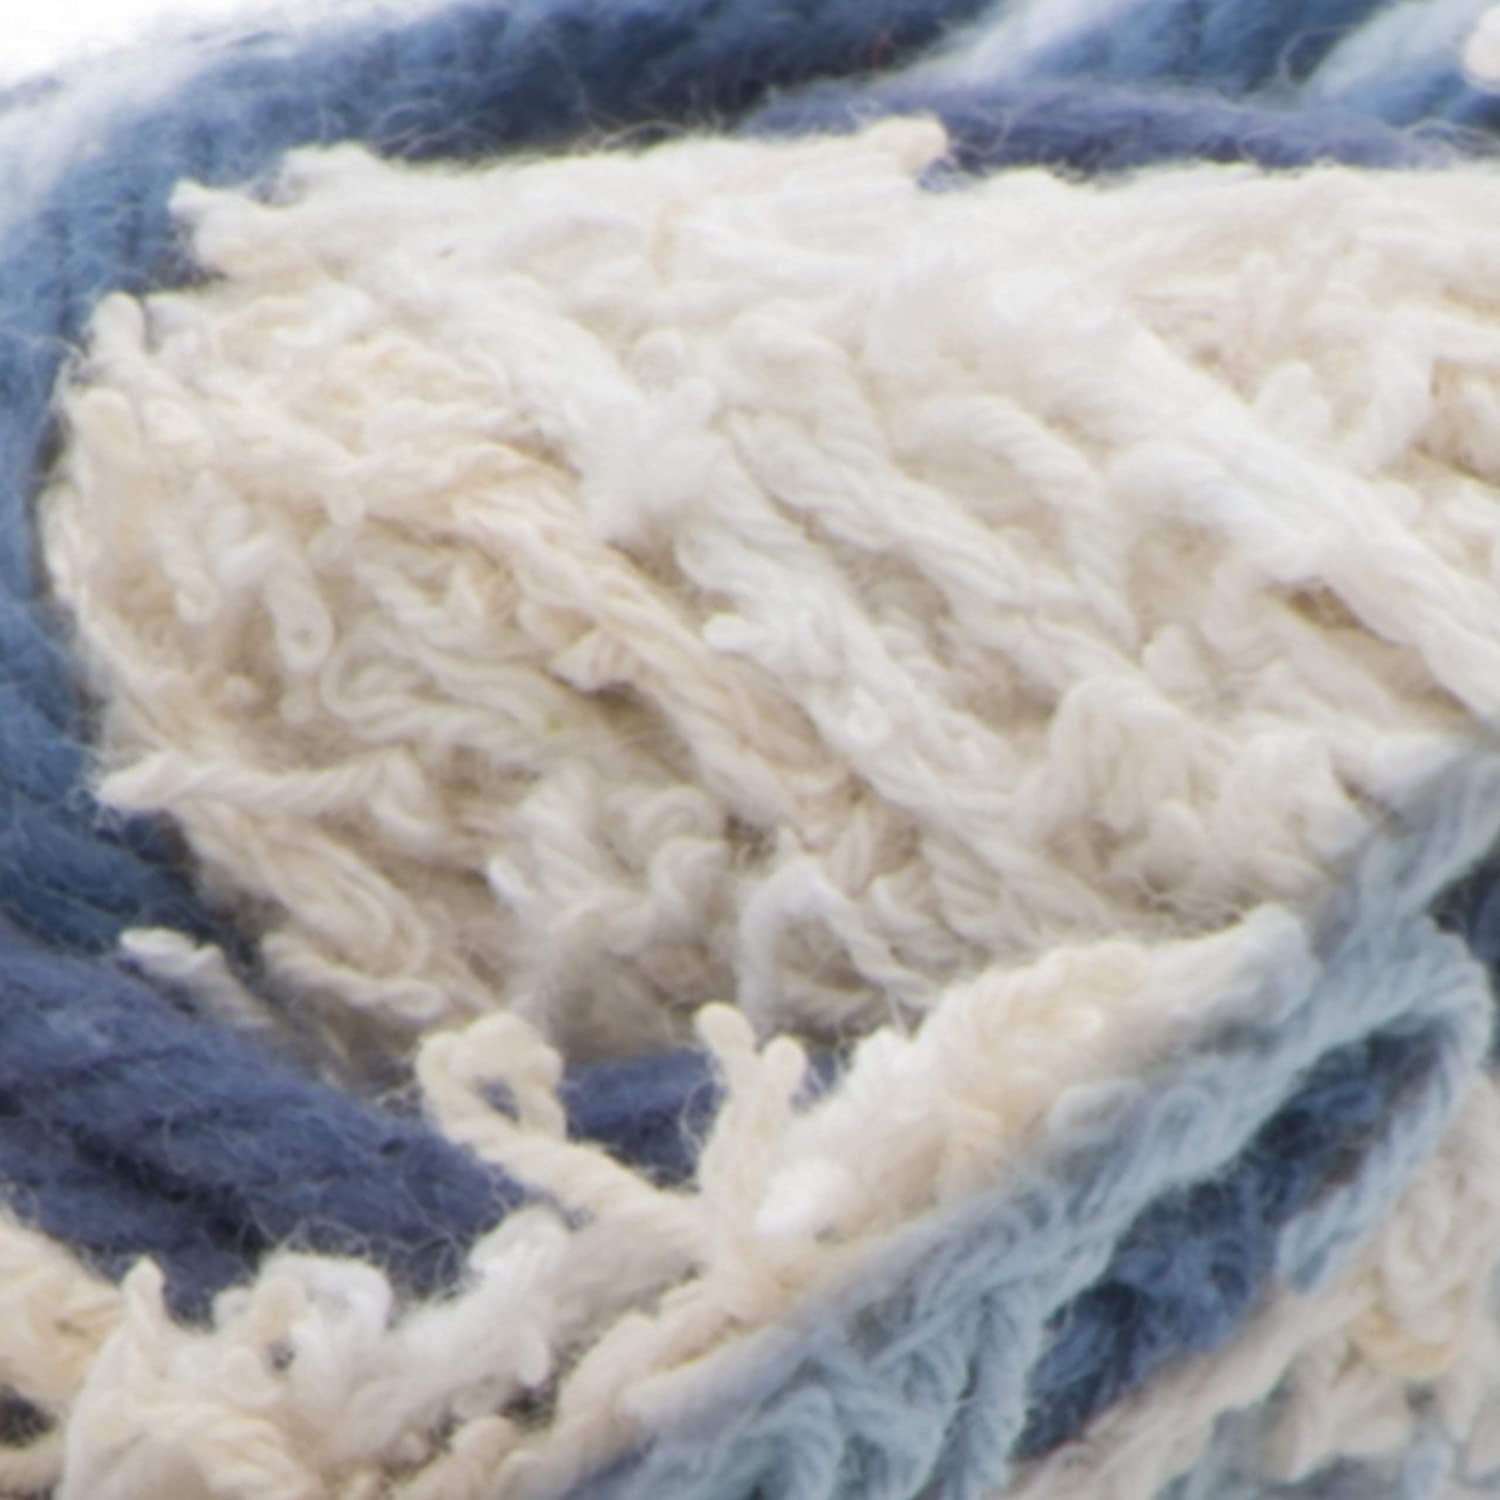 Lily Sugar'n Cream Scrub Off Crochet Yarn in Cornmeal | Size: 75g/2.6oz | Pattern: Crochet | by Yarnspirations